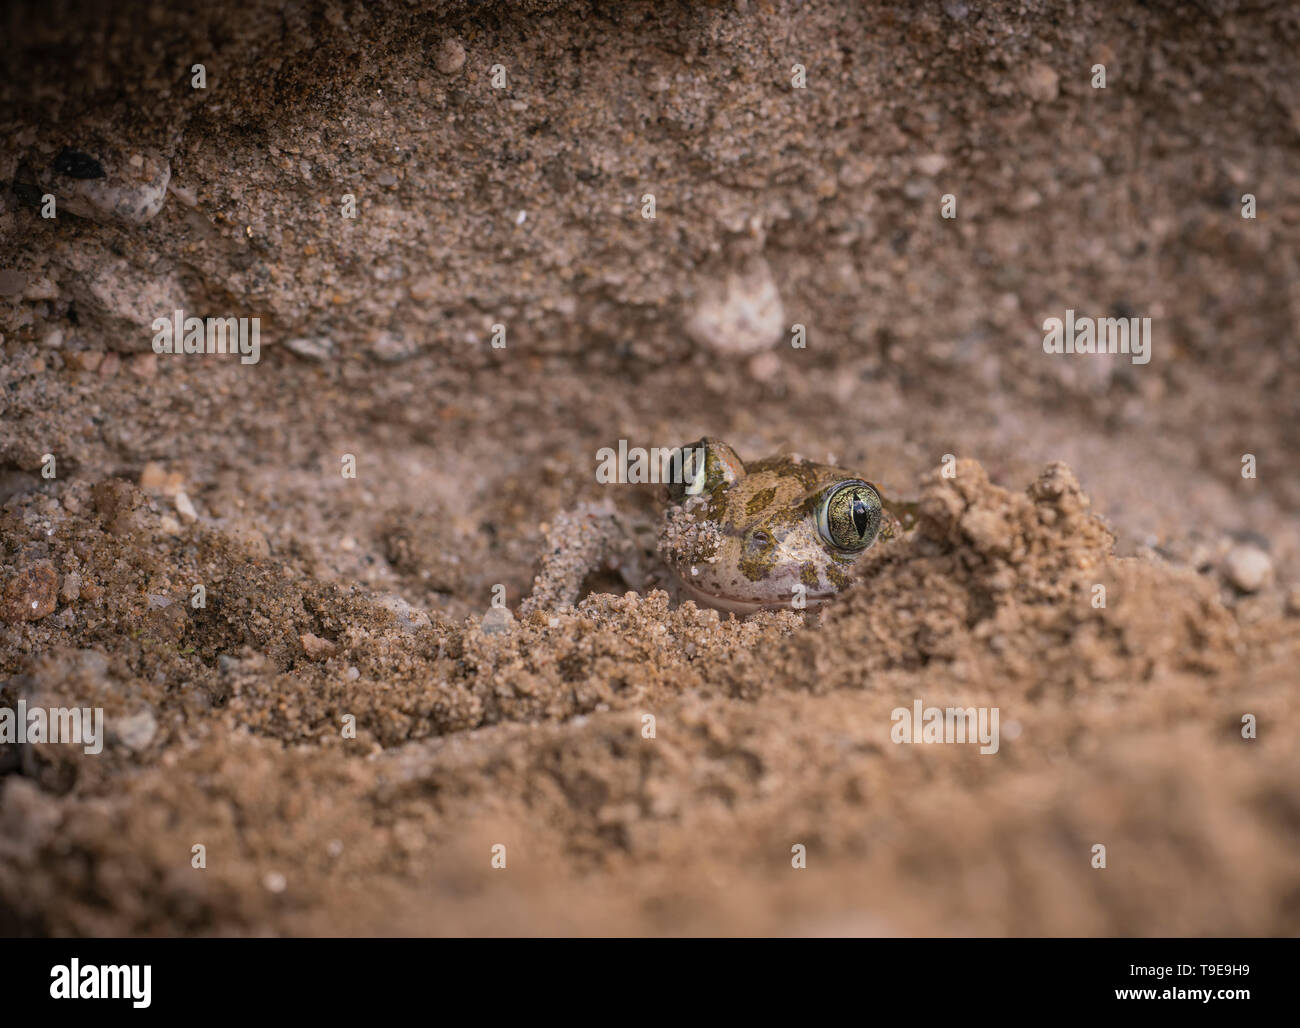 Syrische Spadefoot toad, Pelobates syriacus, beginnt sich in einer Sandbank zu begraben, Frühling in Bulgarien Stockfoto